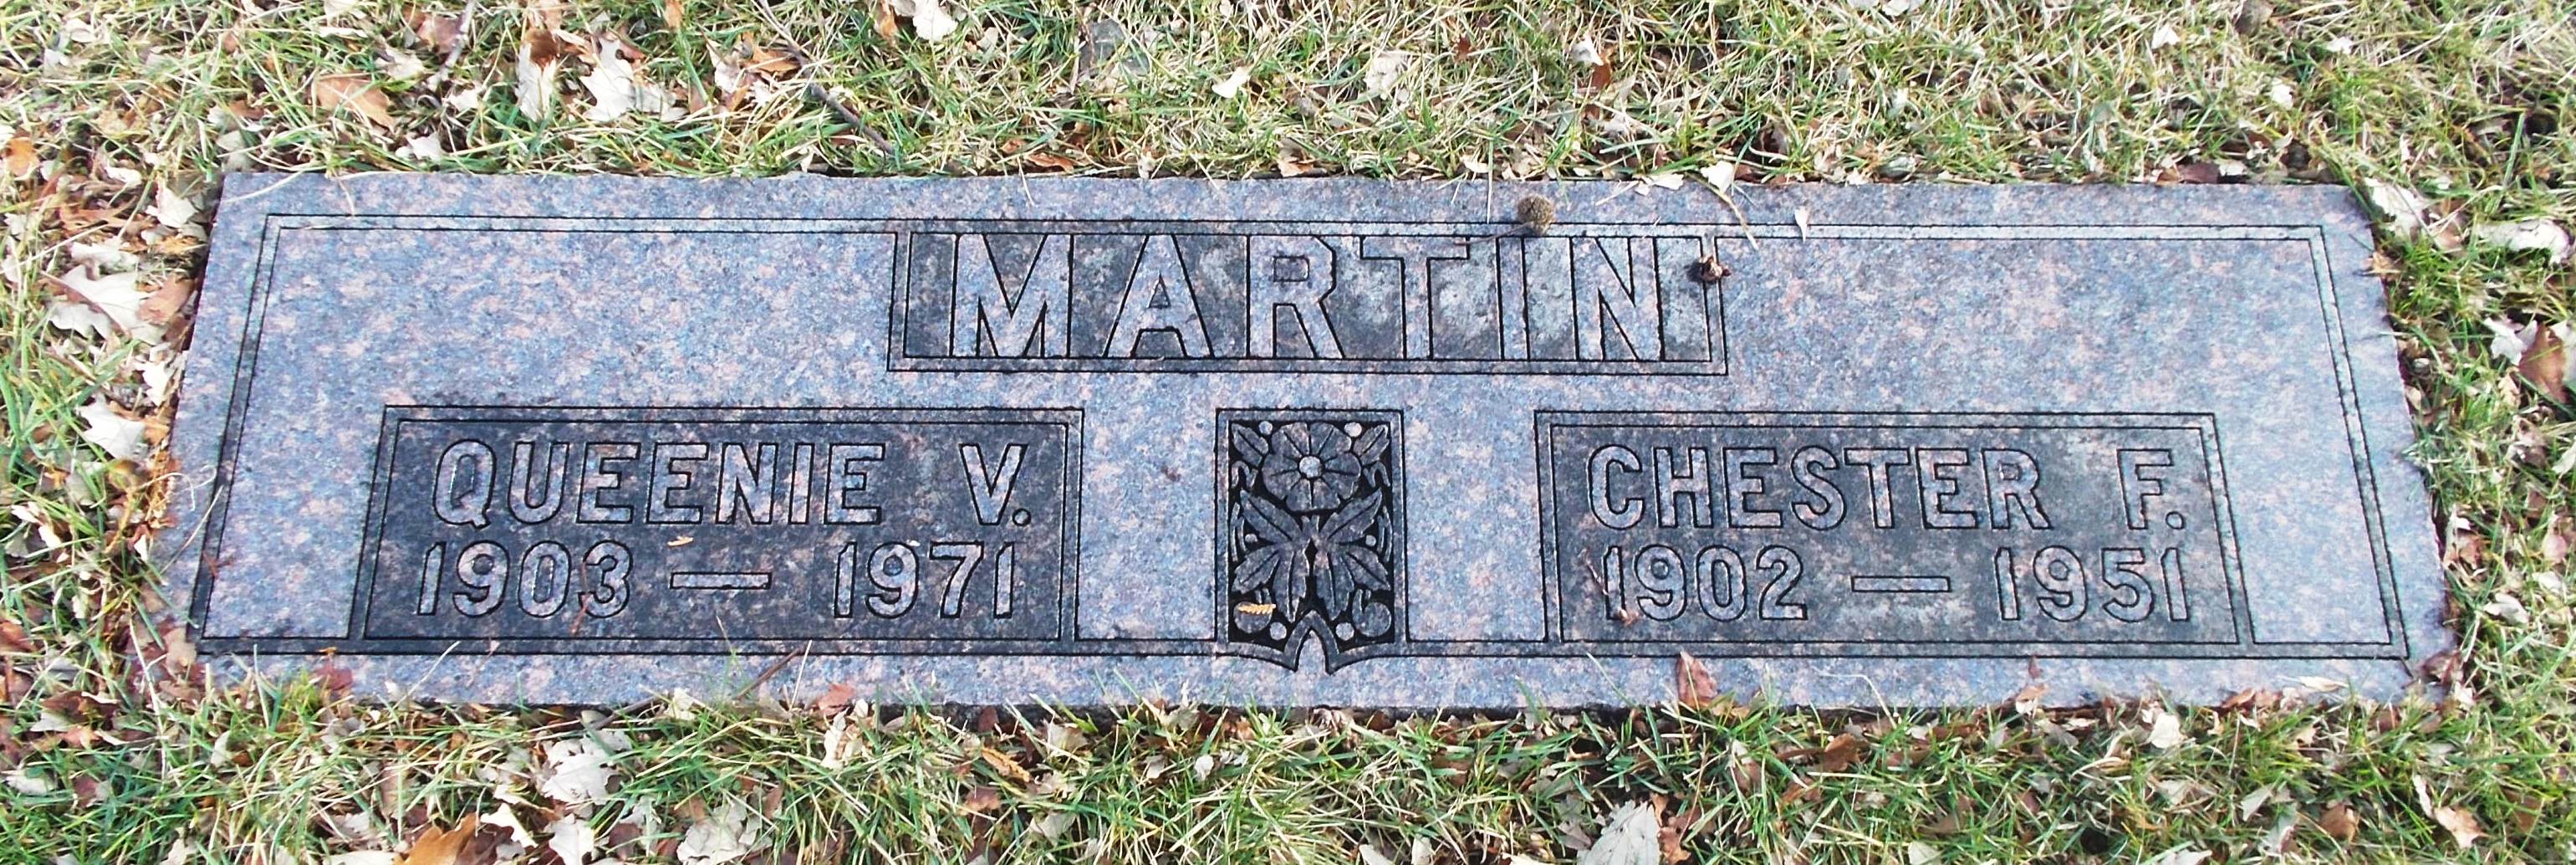 Chester F Martin